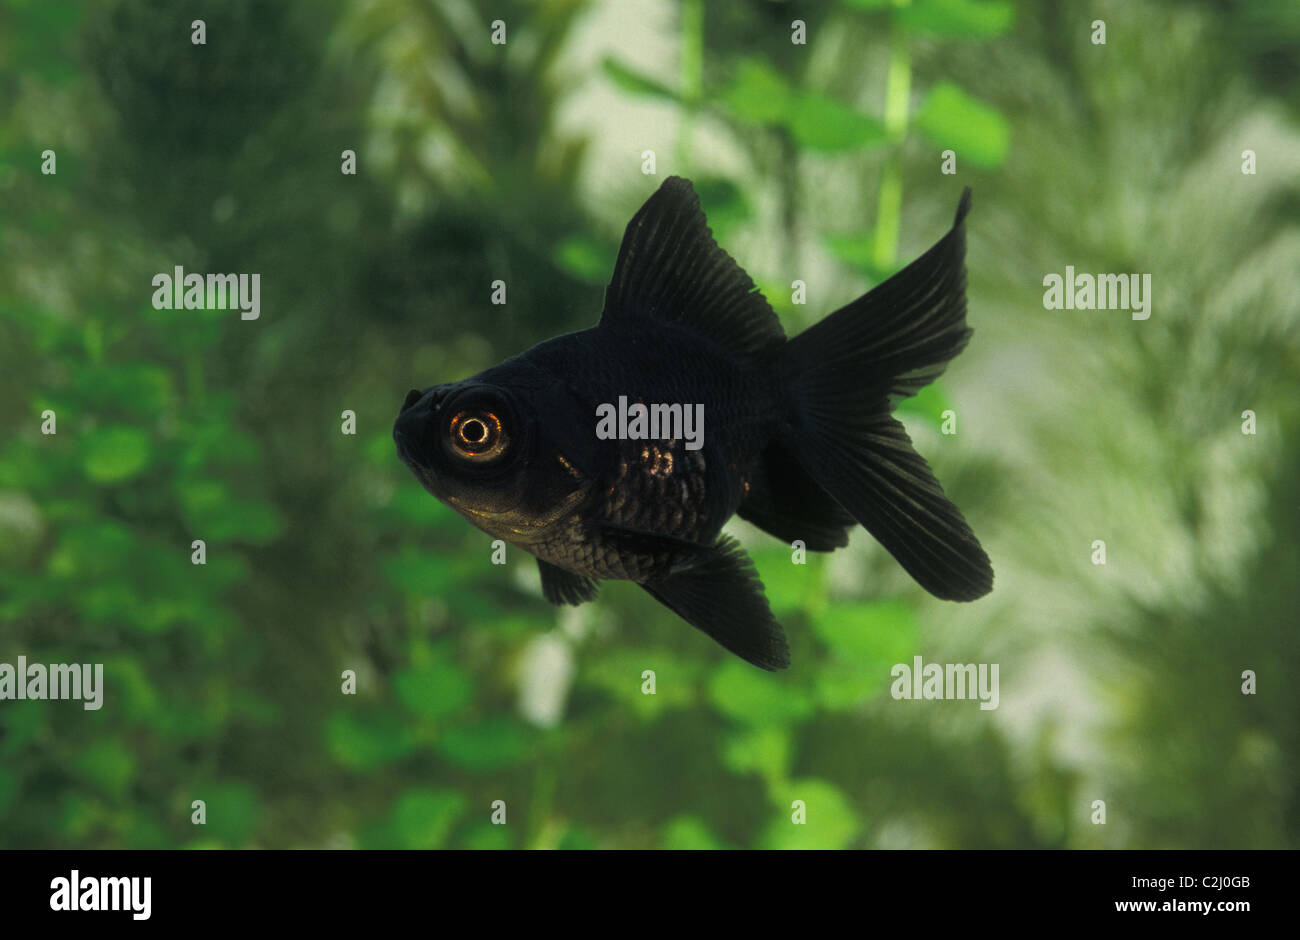 Dragon-eye - Black-Moor - Télescope noir le carassin (Carassius auratus)  Nager dans un aquarium Photo Stock - Alamy